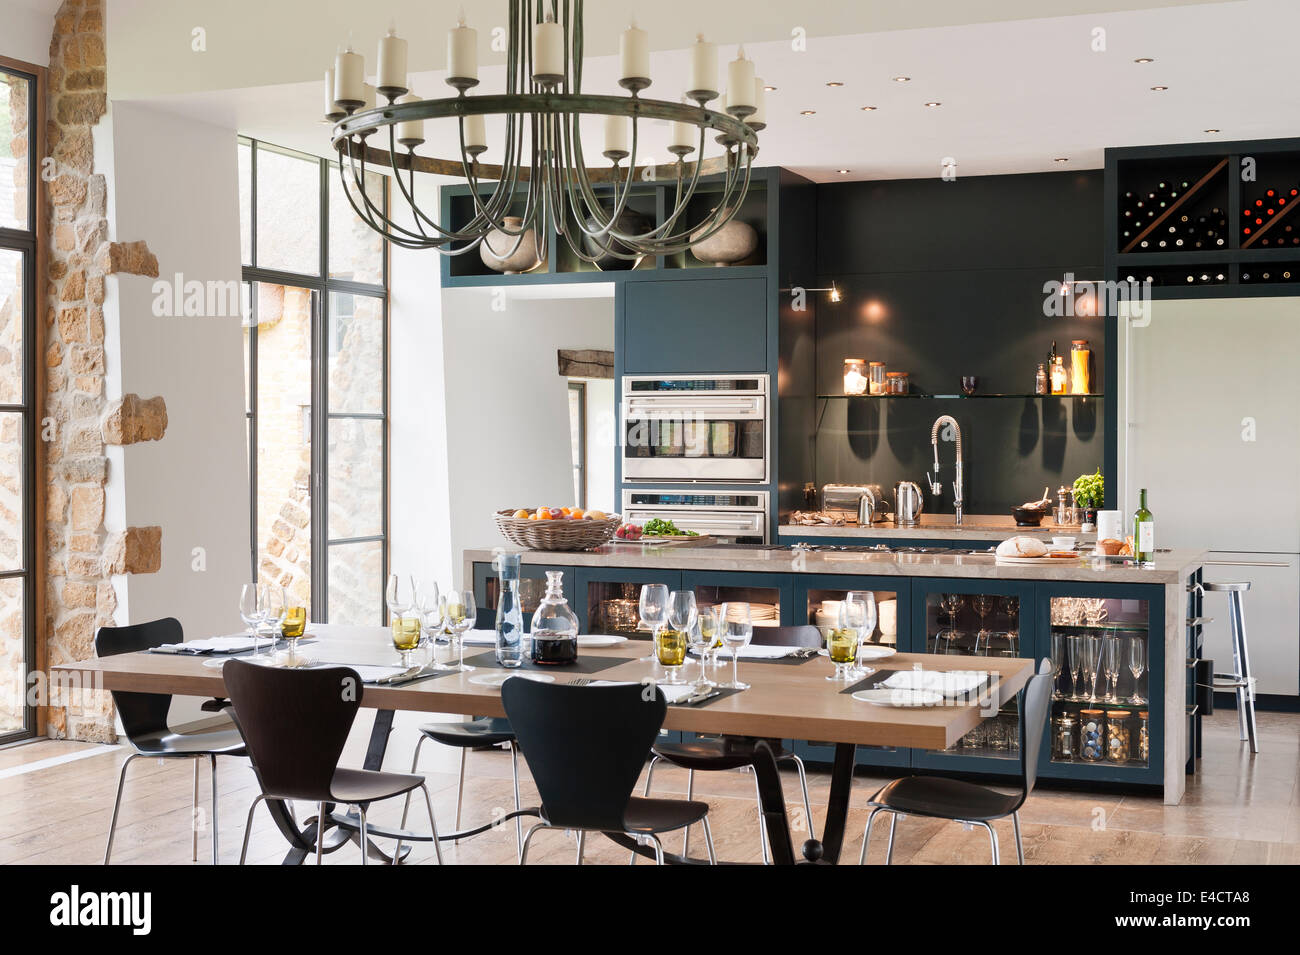 Lustre vert-de-gris est suspendu au-dessus d'une table à manger en chêne garni cuisine-séjour avec des unités peintes en bleu/gris Banque D'Images